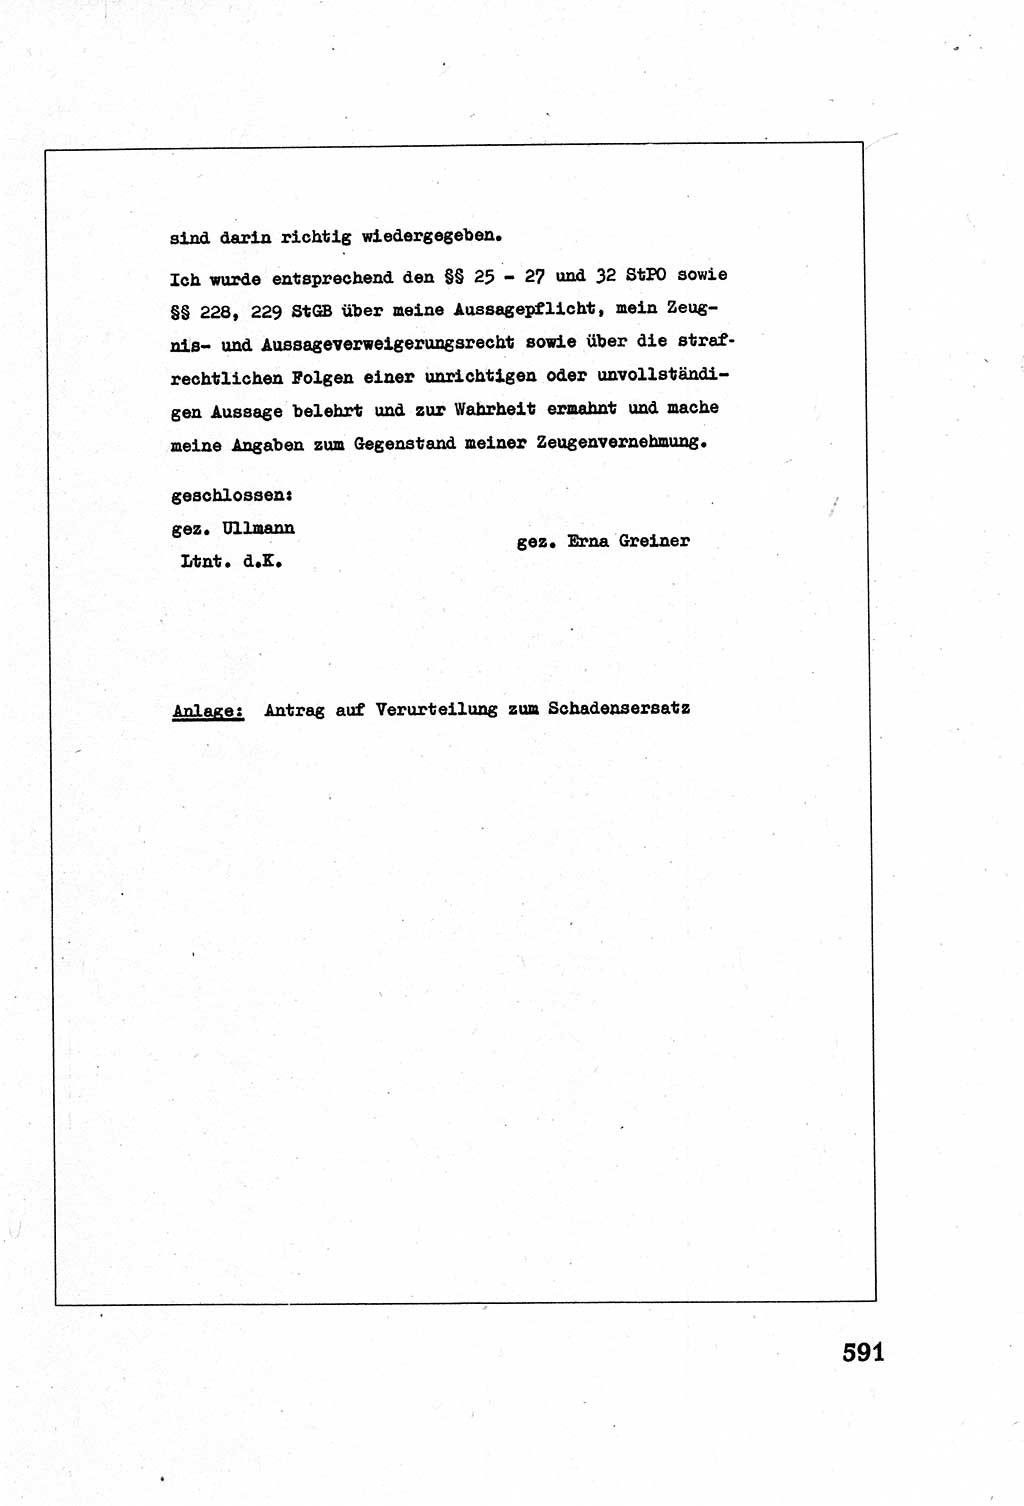 Strafverfahrensrecht [Deutsche Demokratische Republik (DDR)], Lehrbuch 1977, Seite 591 (Strafverf.-R. DDR Lb. 1977, S. 591)